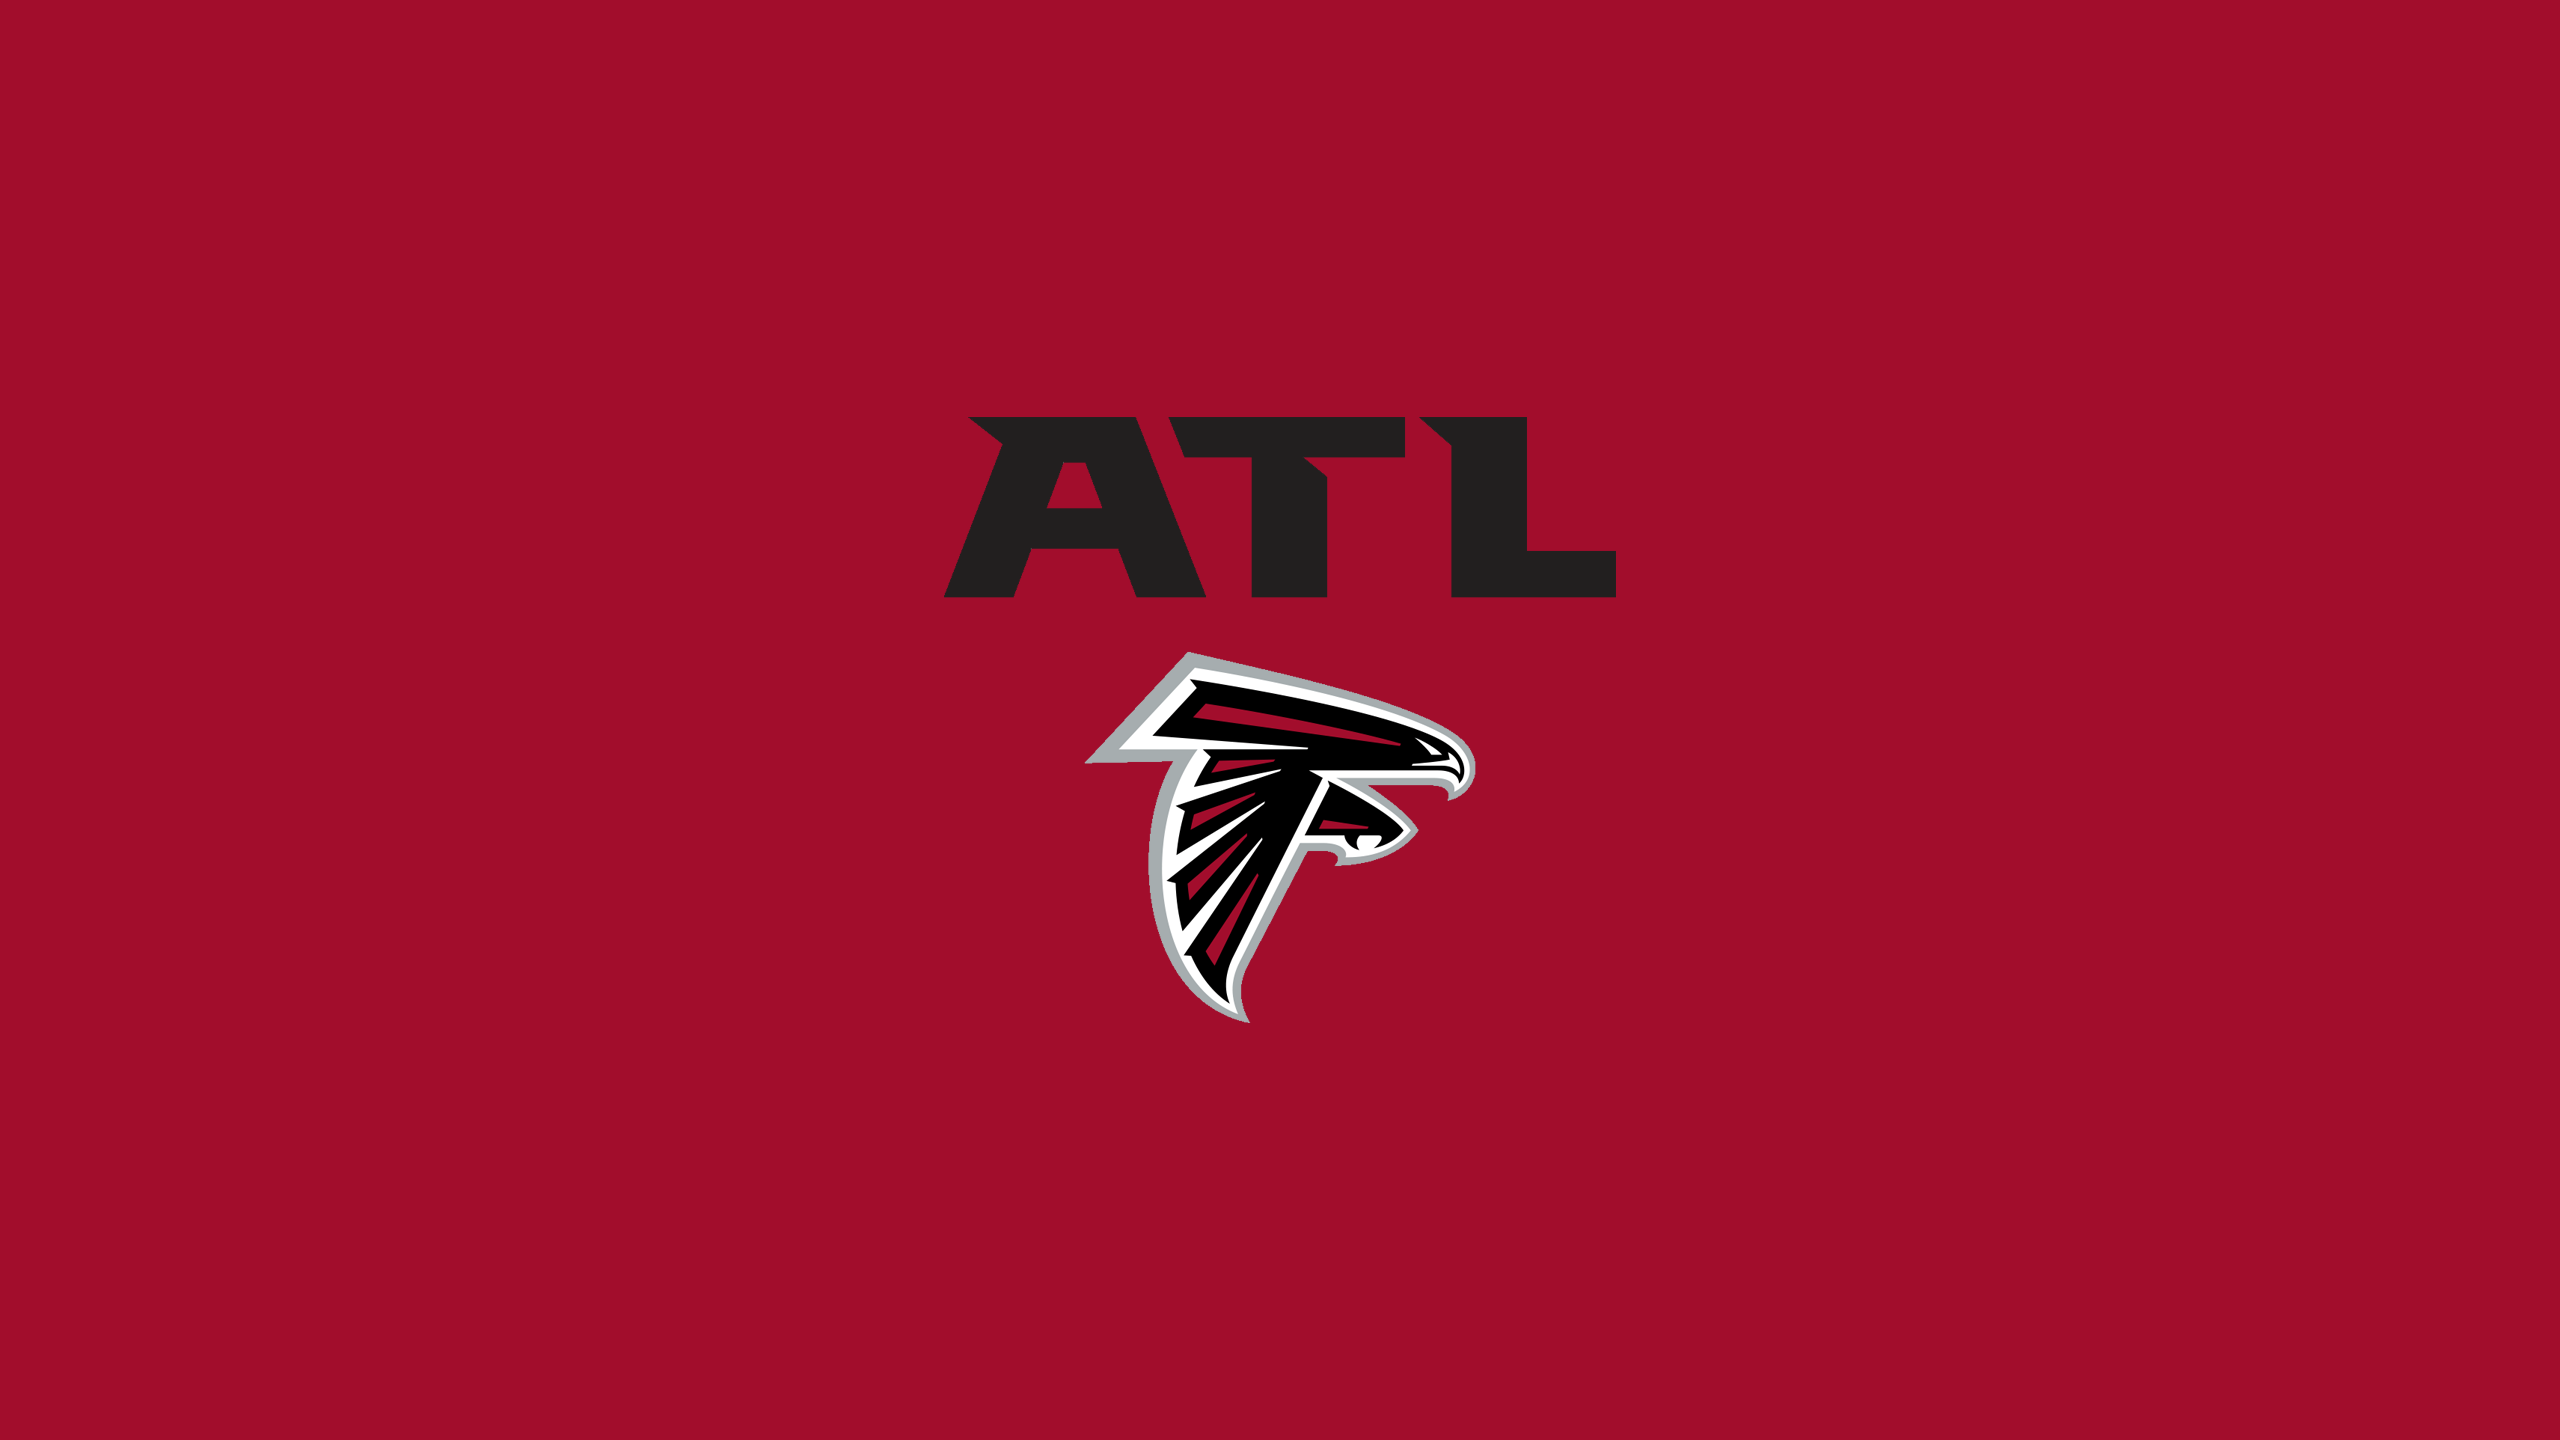 Atlanta Falcons - NFL - Square Bettor